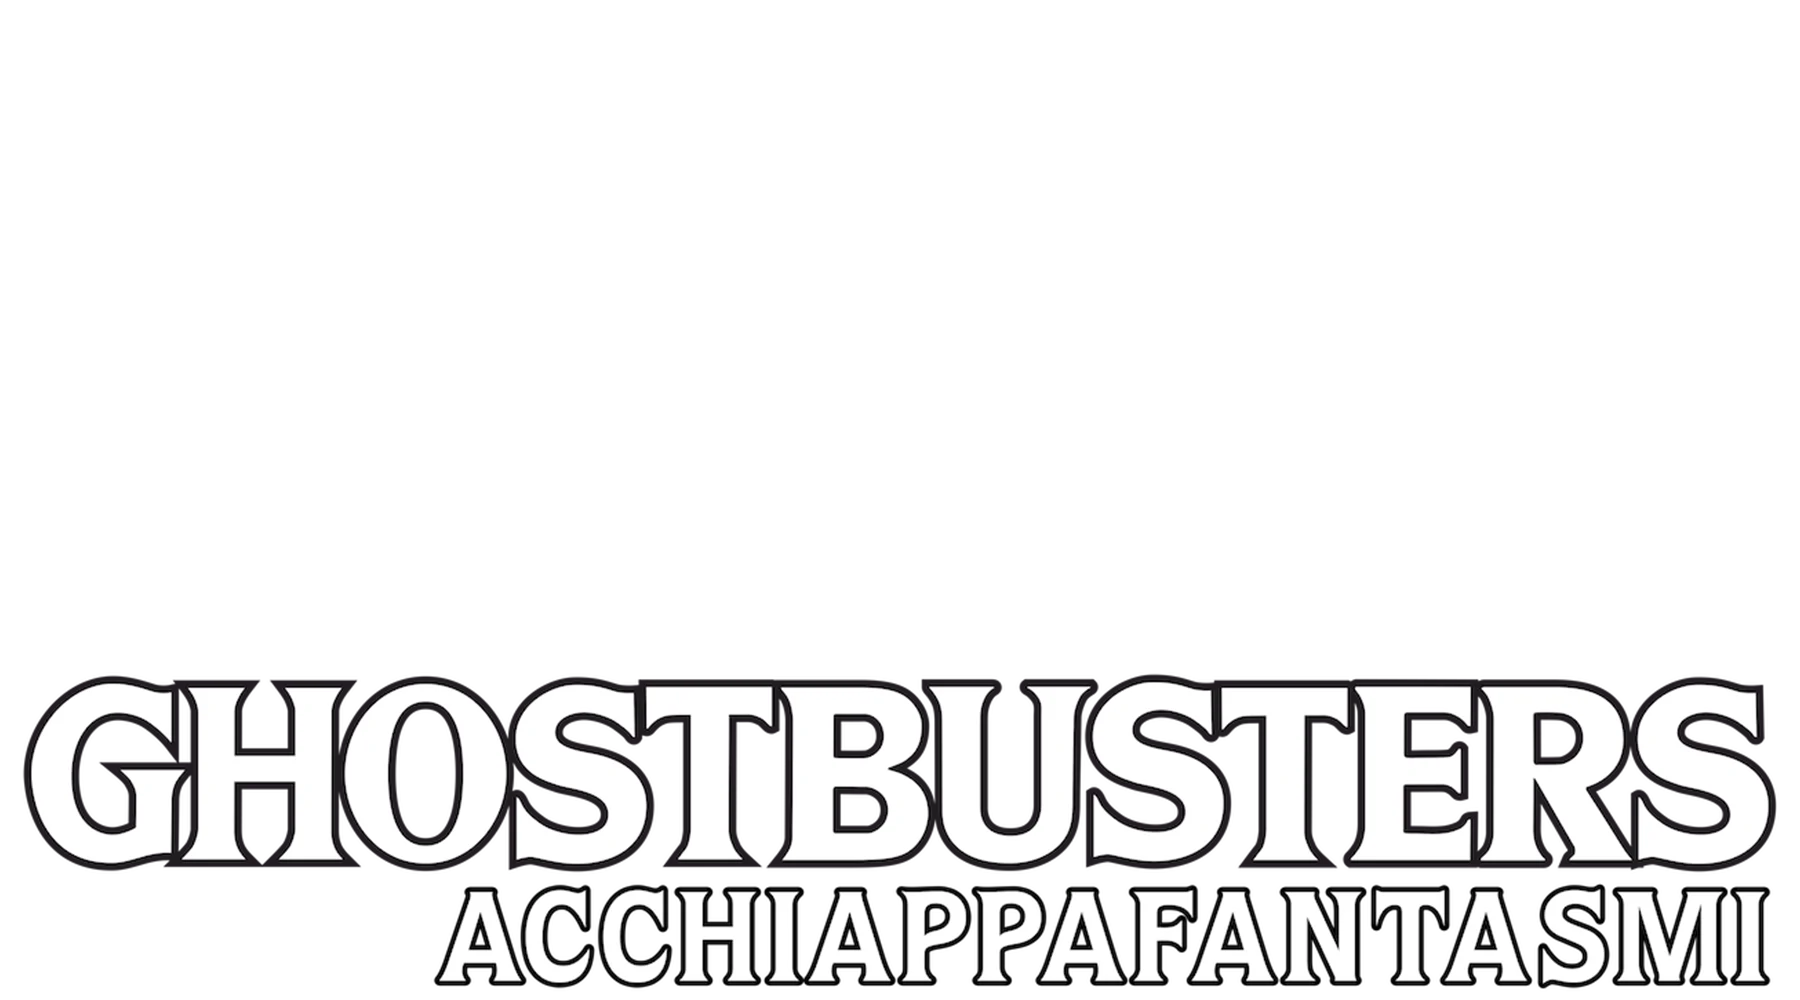 Ghostbusters - Acchiappafantasmi